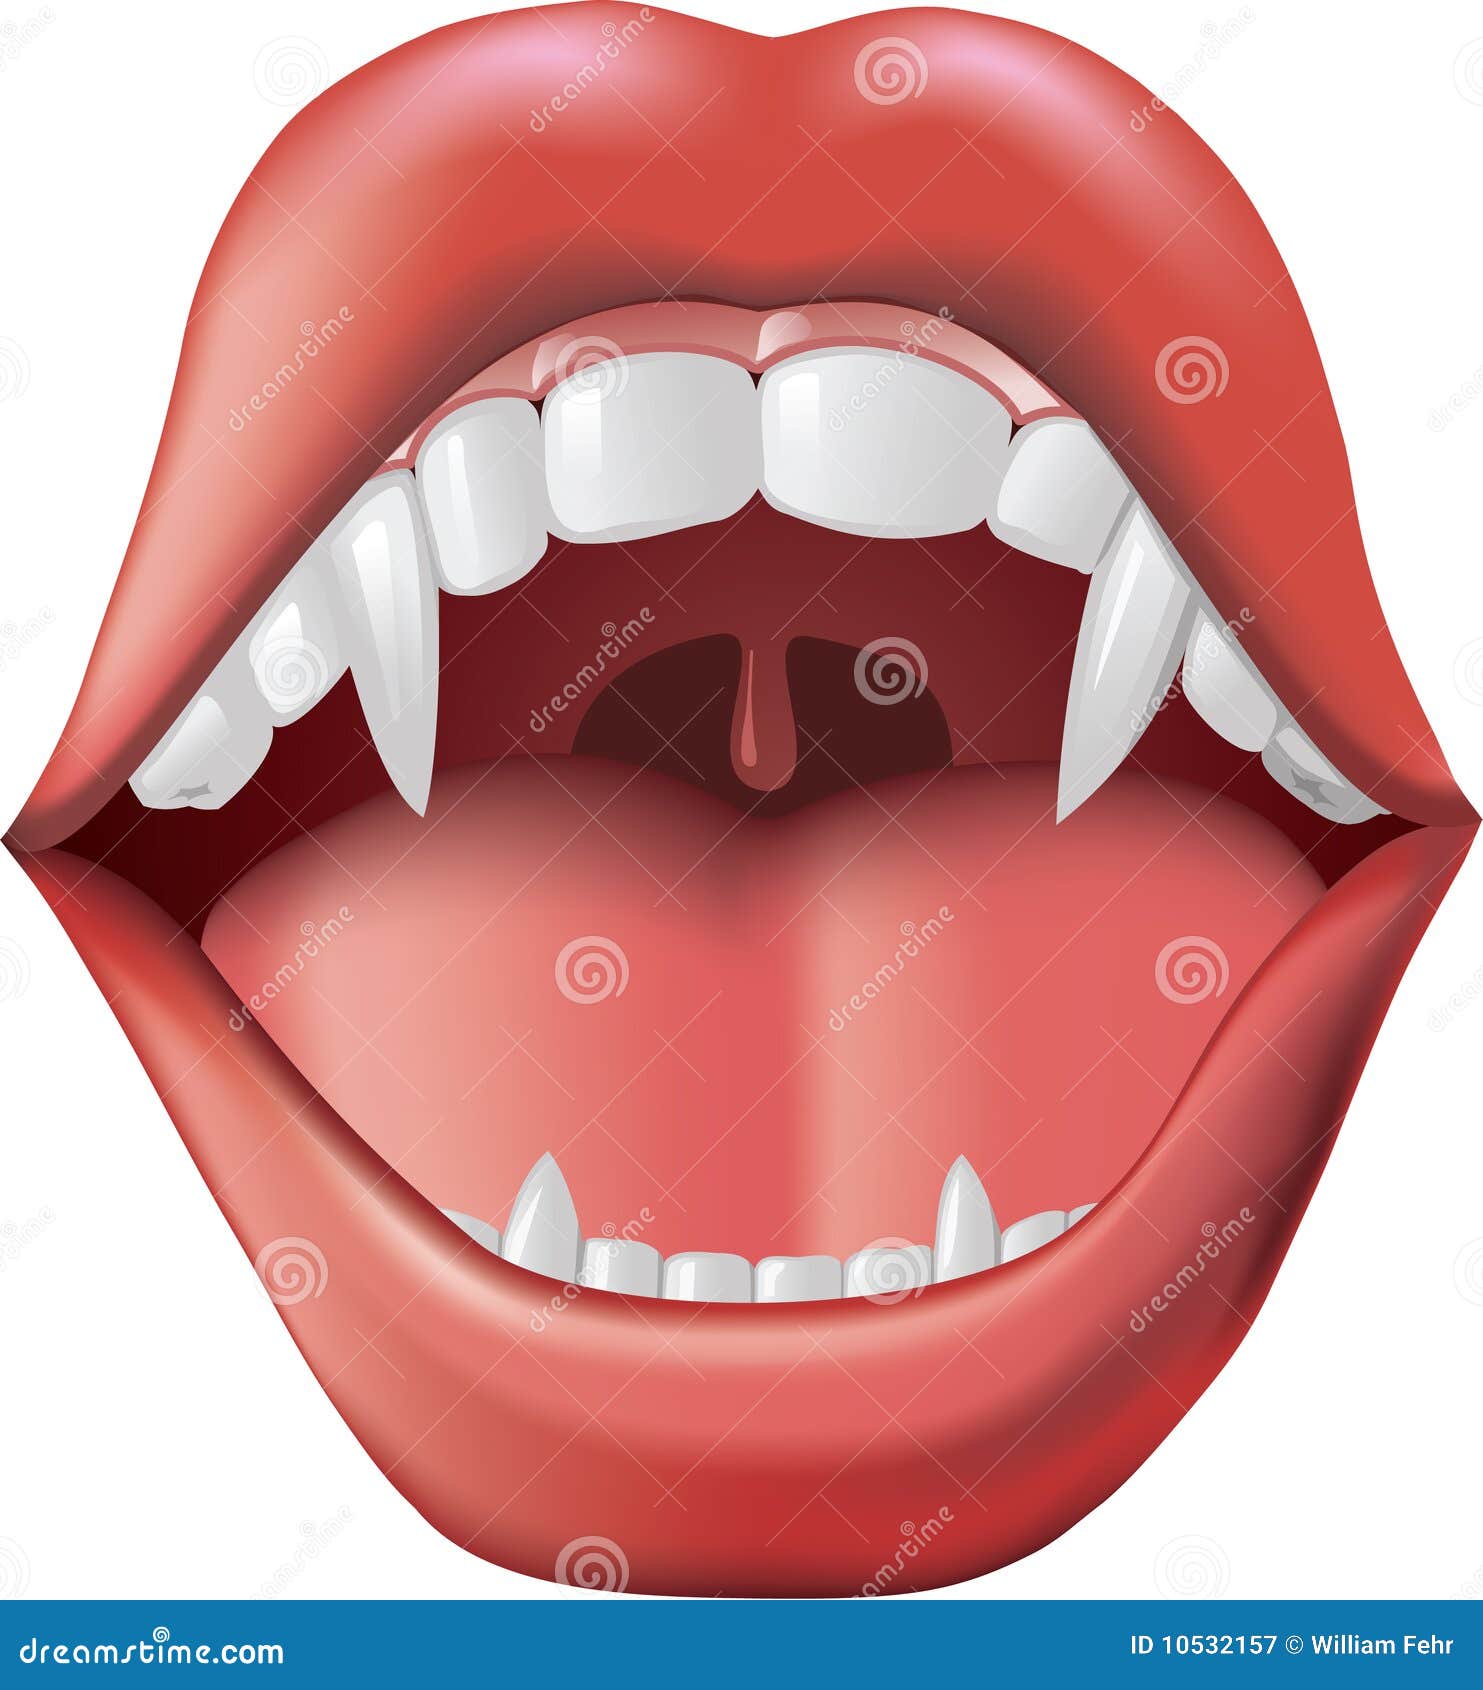 门牙左边里面的第三颗和第四颗颗牙齿突然断了是怎么回事? 人体常识